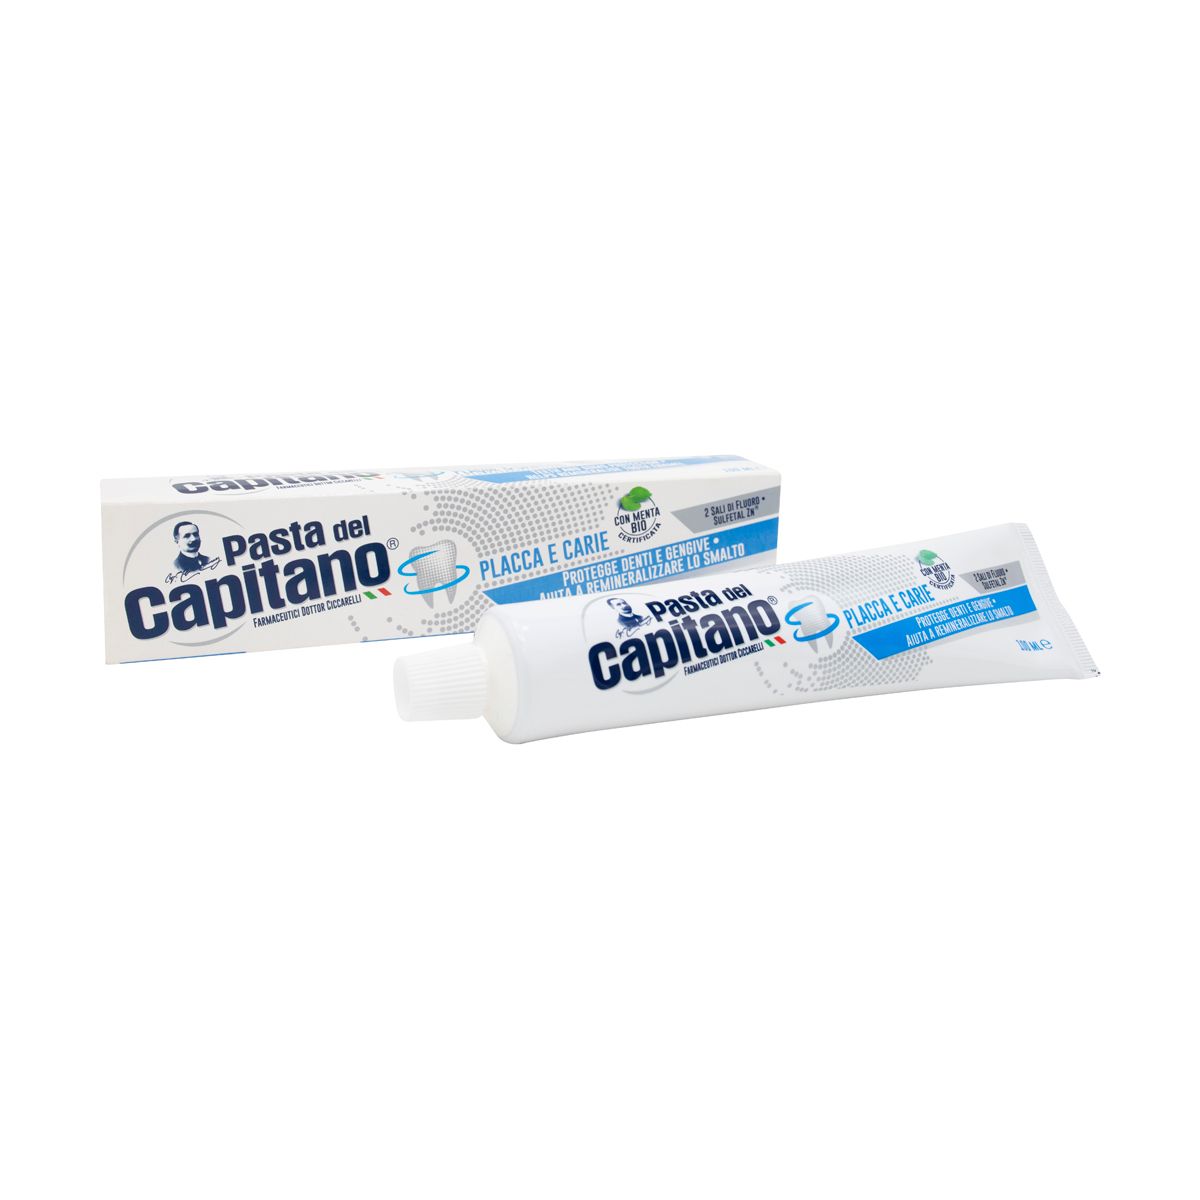 Plaque & Cavities Toothpaste